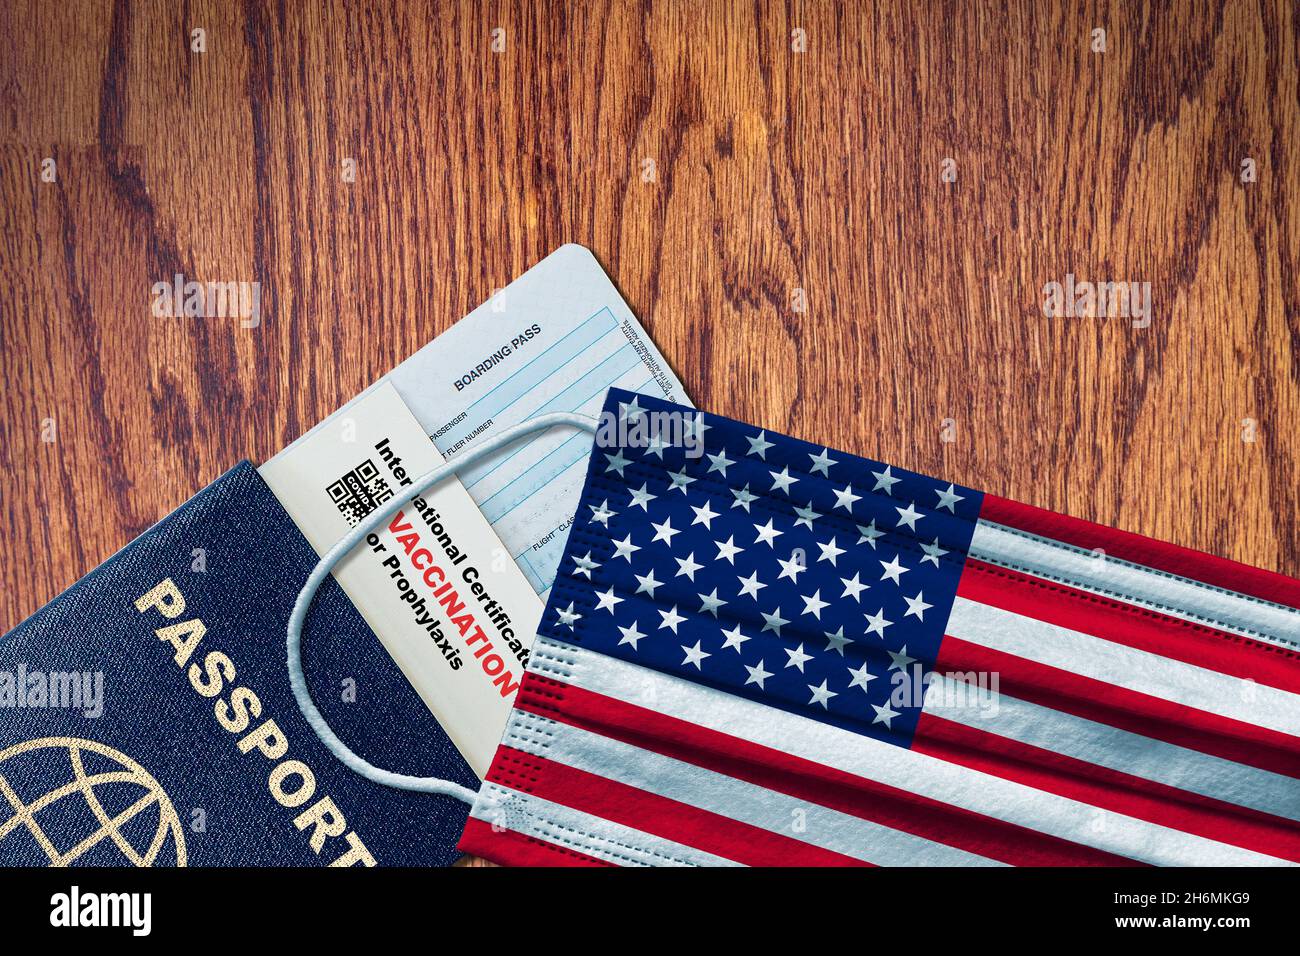 États-Unis nouveau voyage normal avec passeport, carte d'embarquement, masque facial avec drapeau américain et certificat de vaccination COVID-19.Concept de passeport vaccinal Banque D'Images